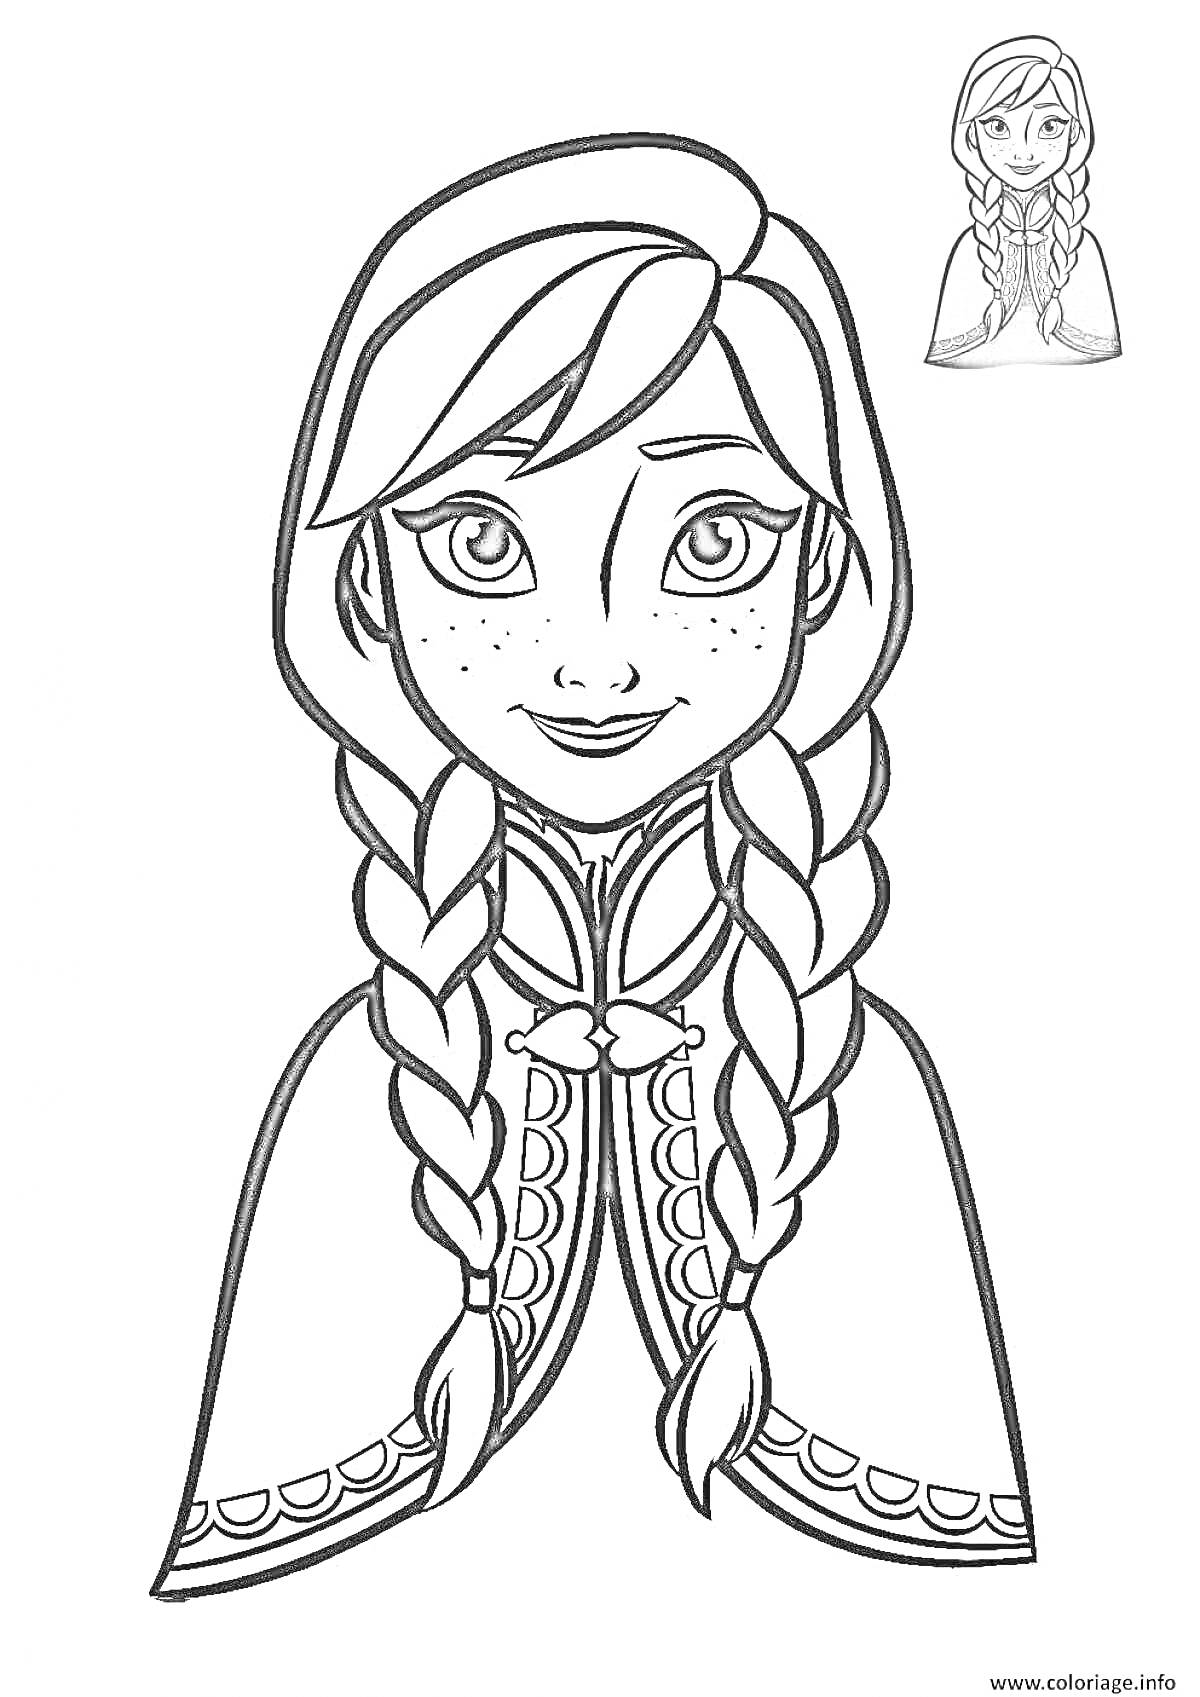 Раскраска Девочка с косами, с деталями костюма в виде жакета (из анимационного фильма)